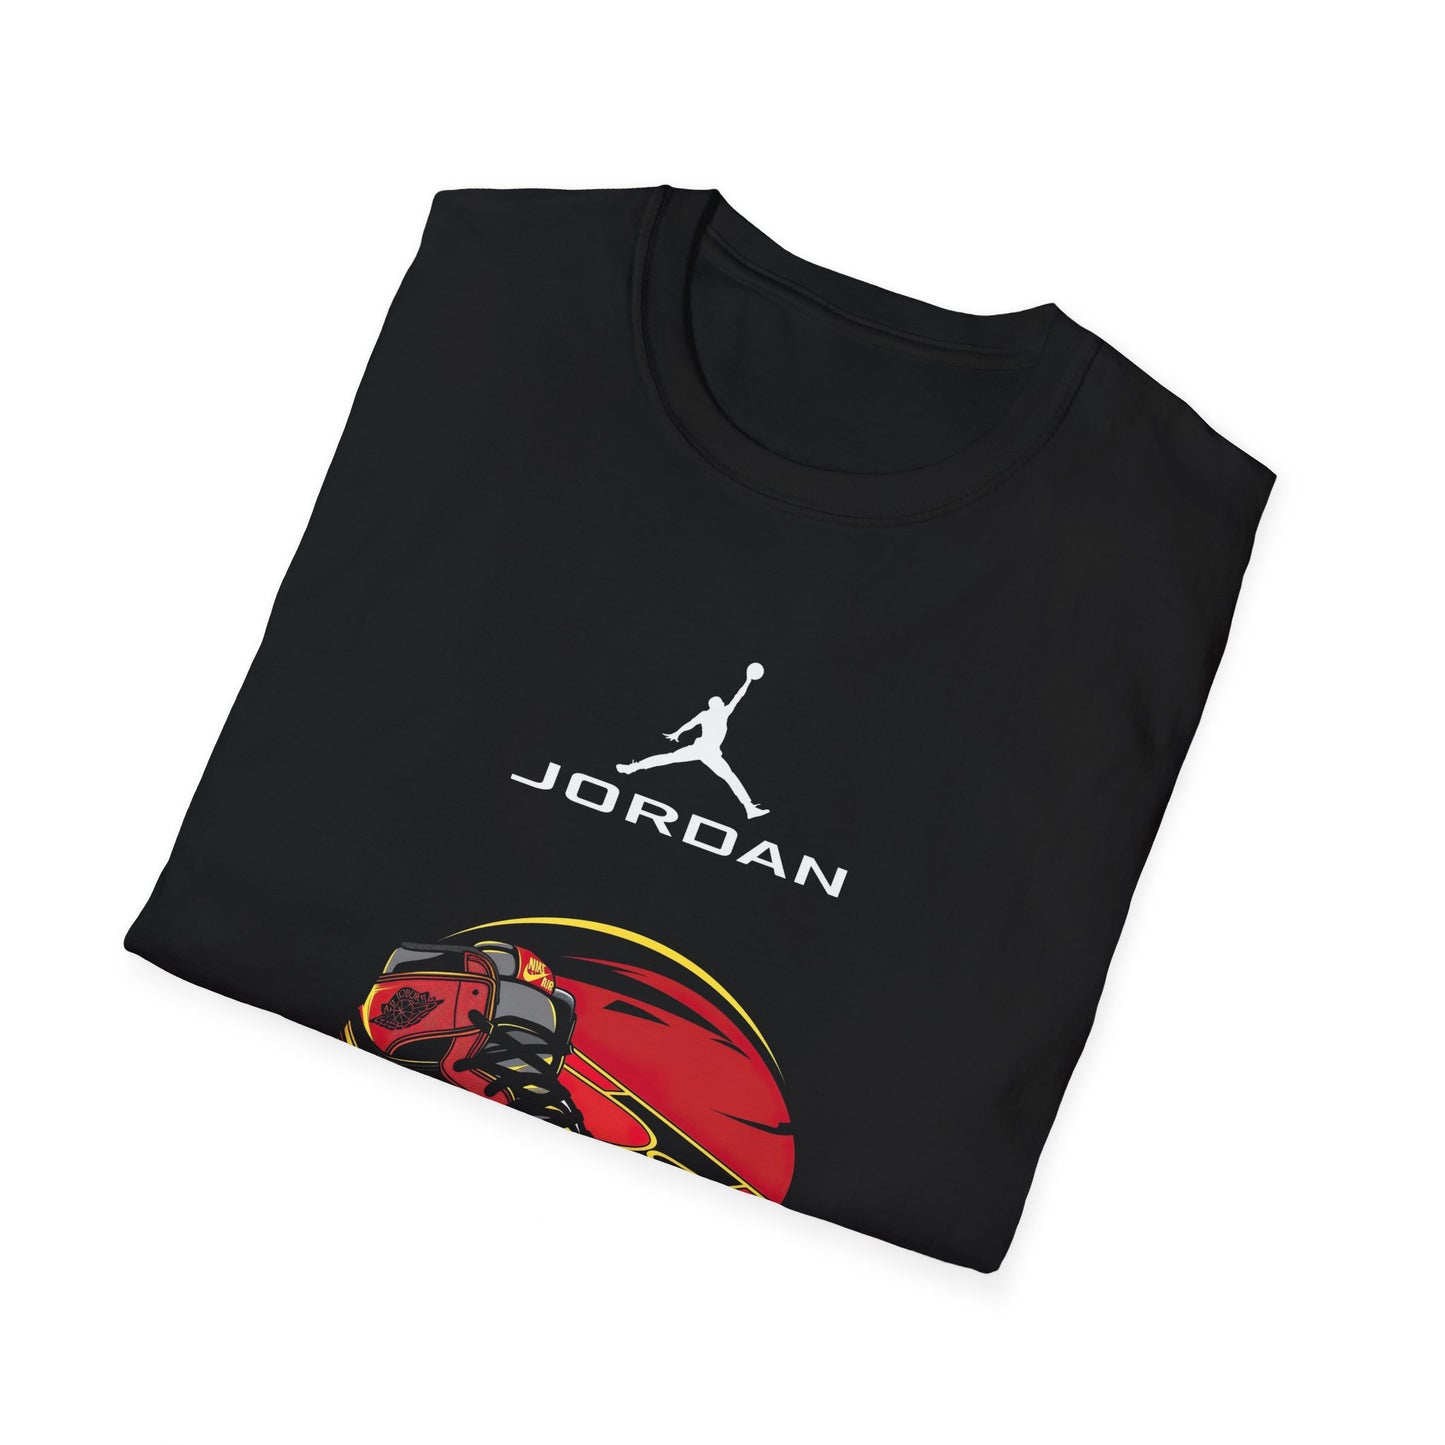 Exclusive Black Air Jordan T-Shirt with Iconic Jordan Sneakers Design – Premium Comfort for Sneakerheads